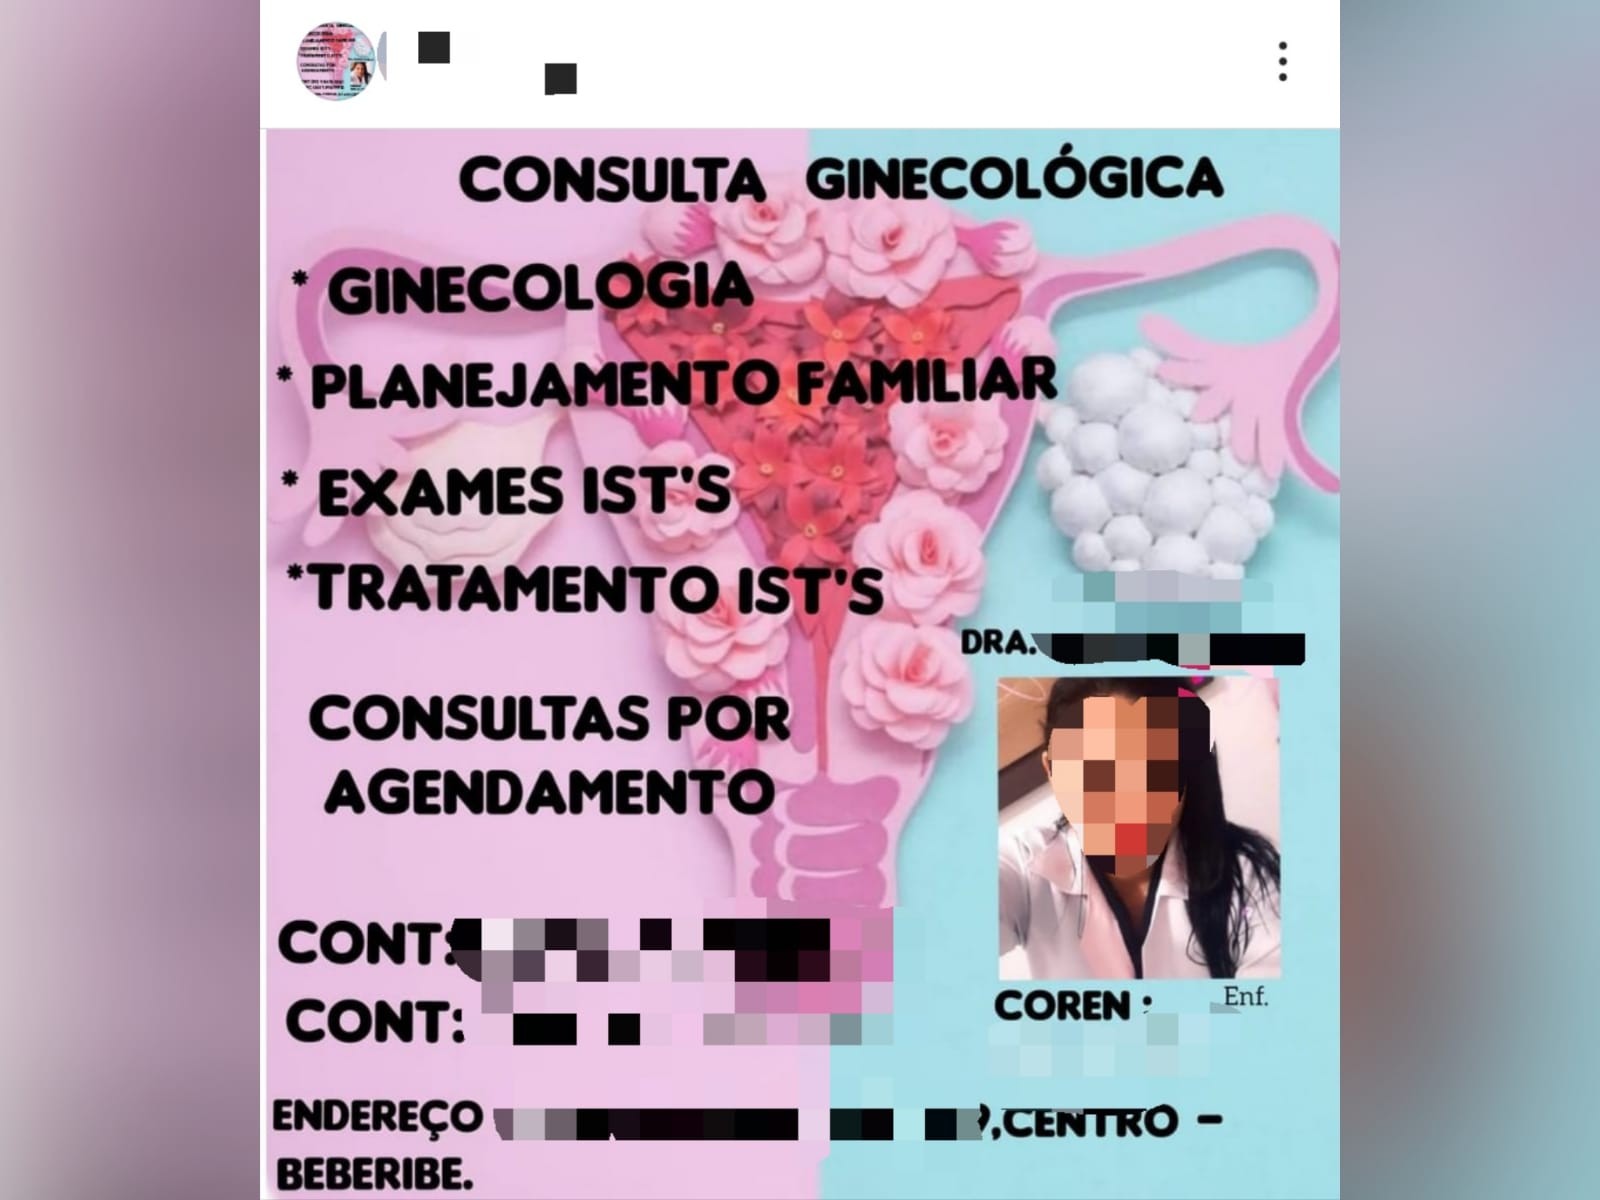 Enfermeira autuada pela polícia no Ceará se passava por ginecologista e divulgava serviços em rede social 